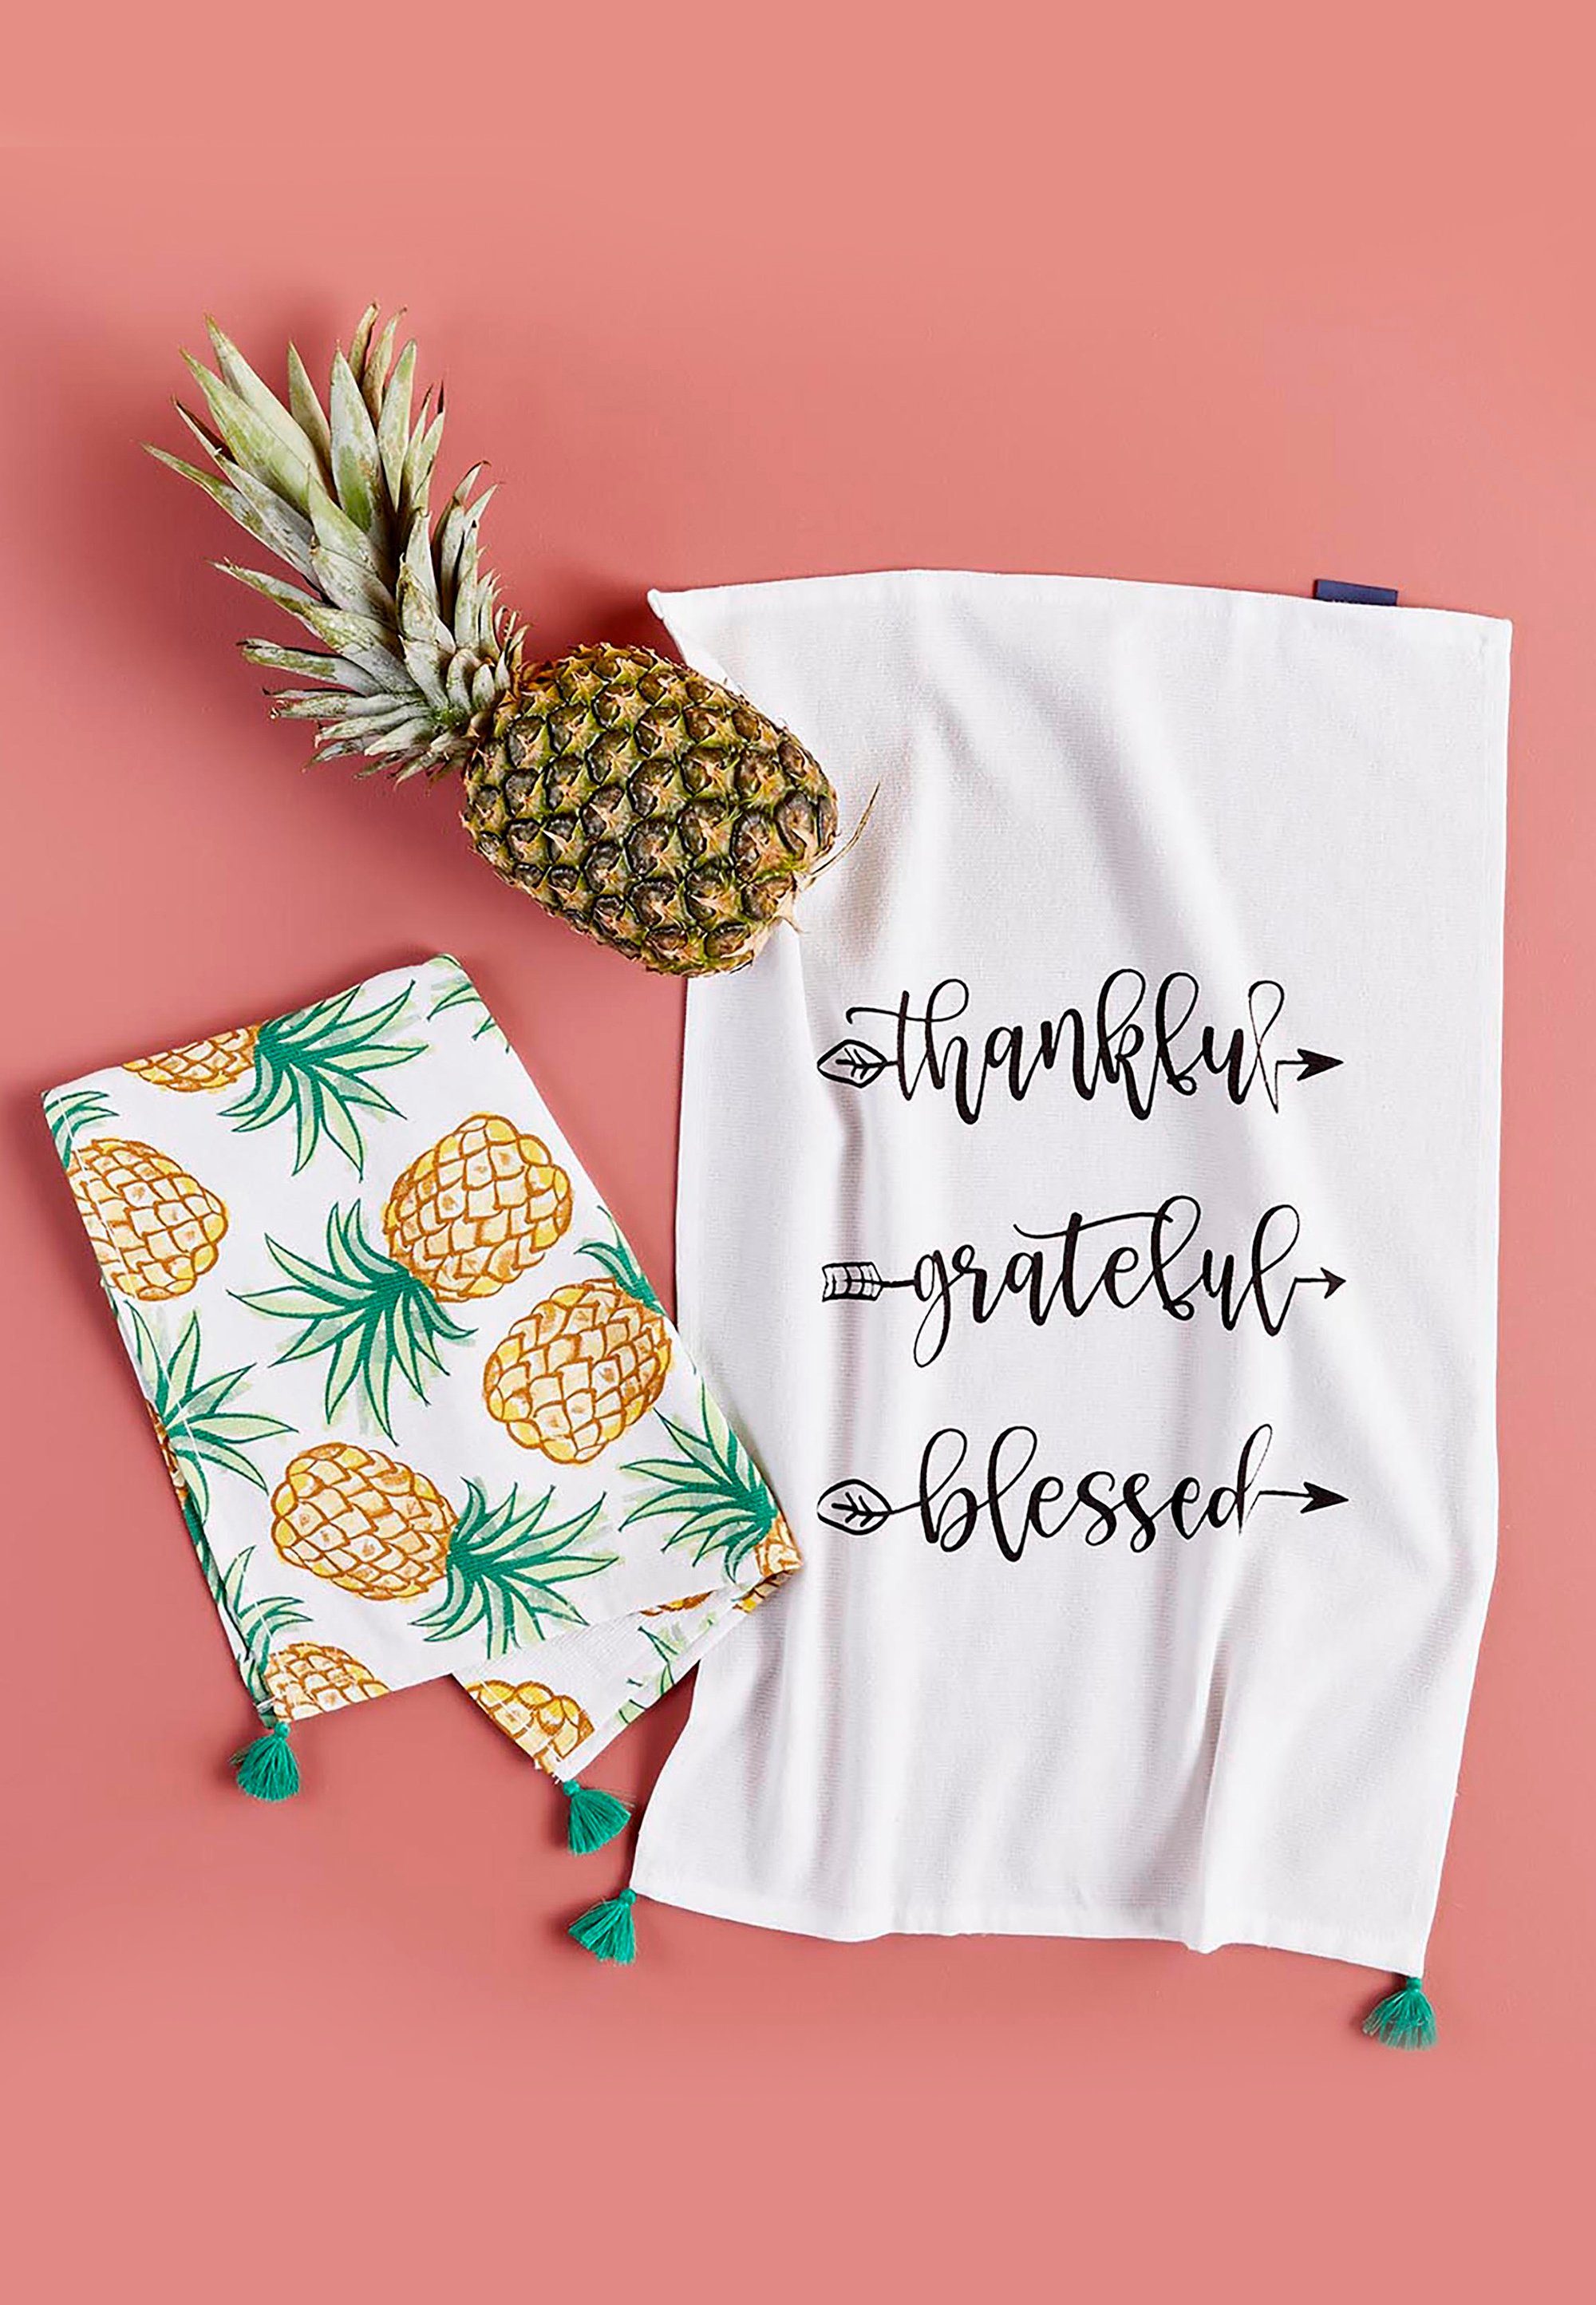 Bella Maison Geschirrtuch Pineapple, mit trendigen Prints